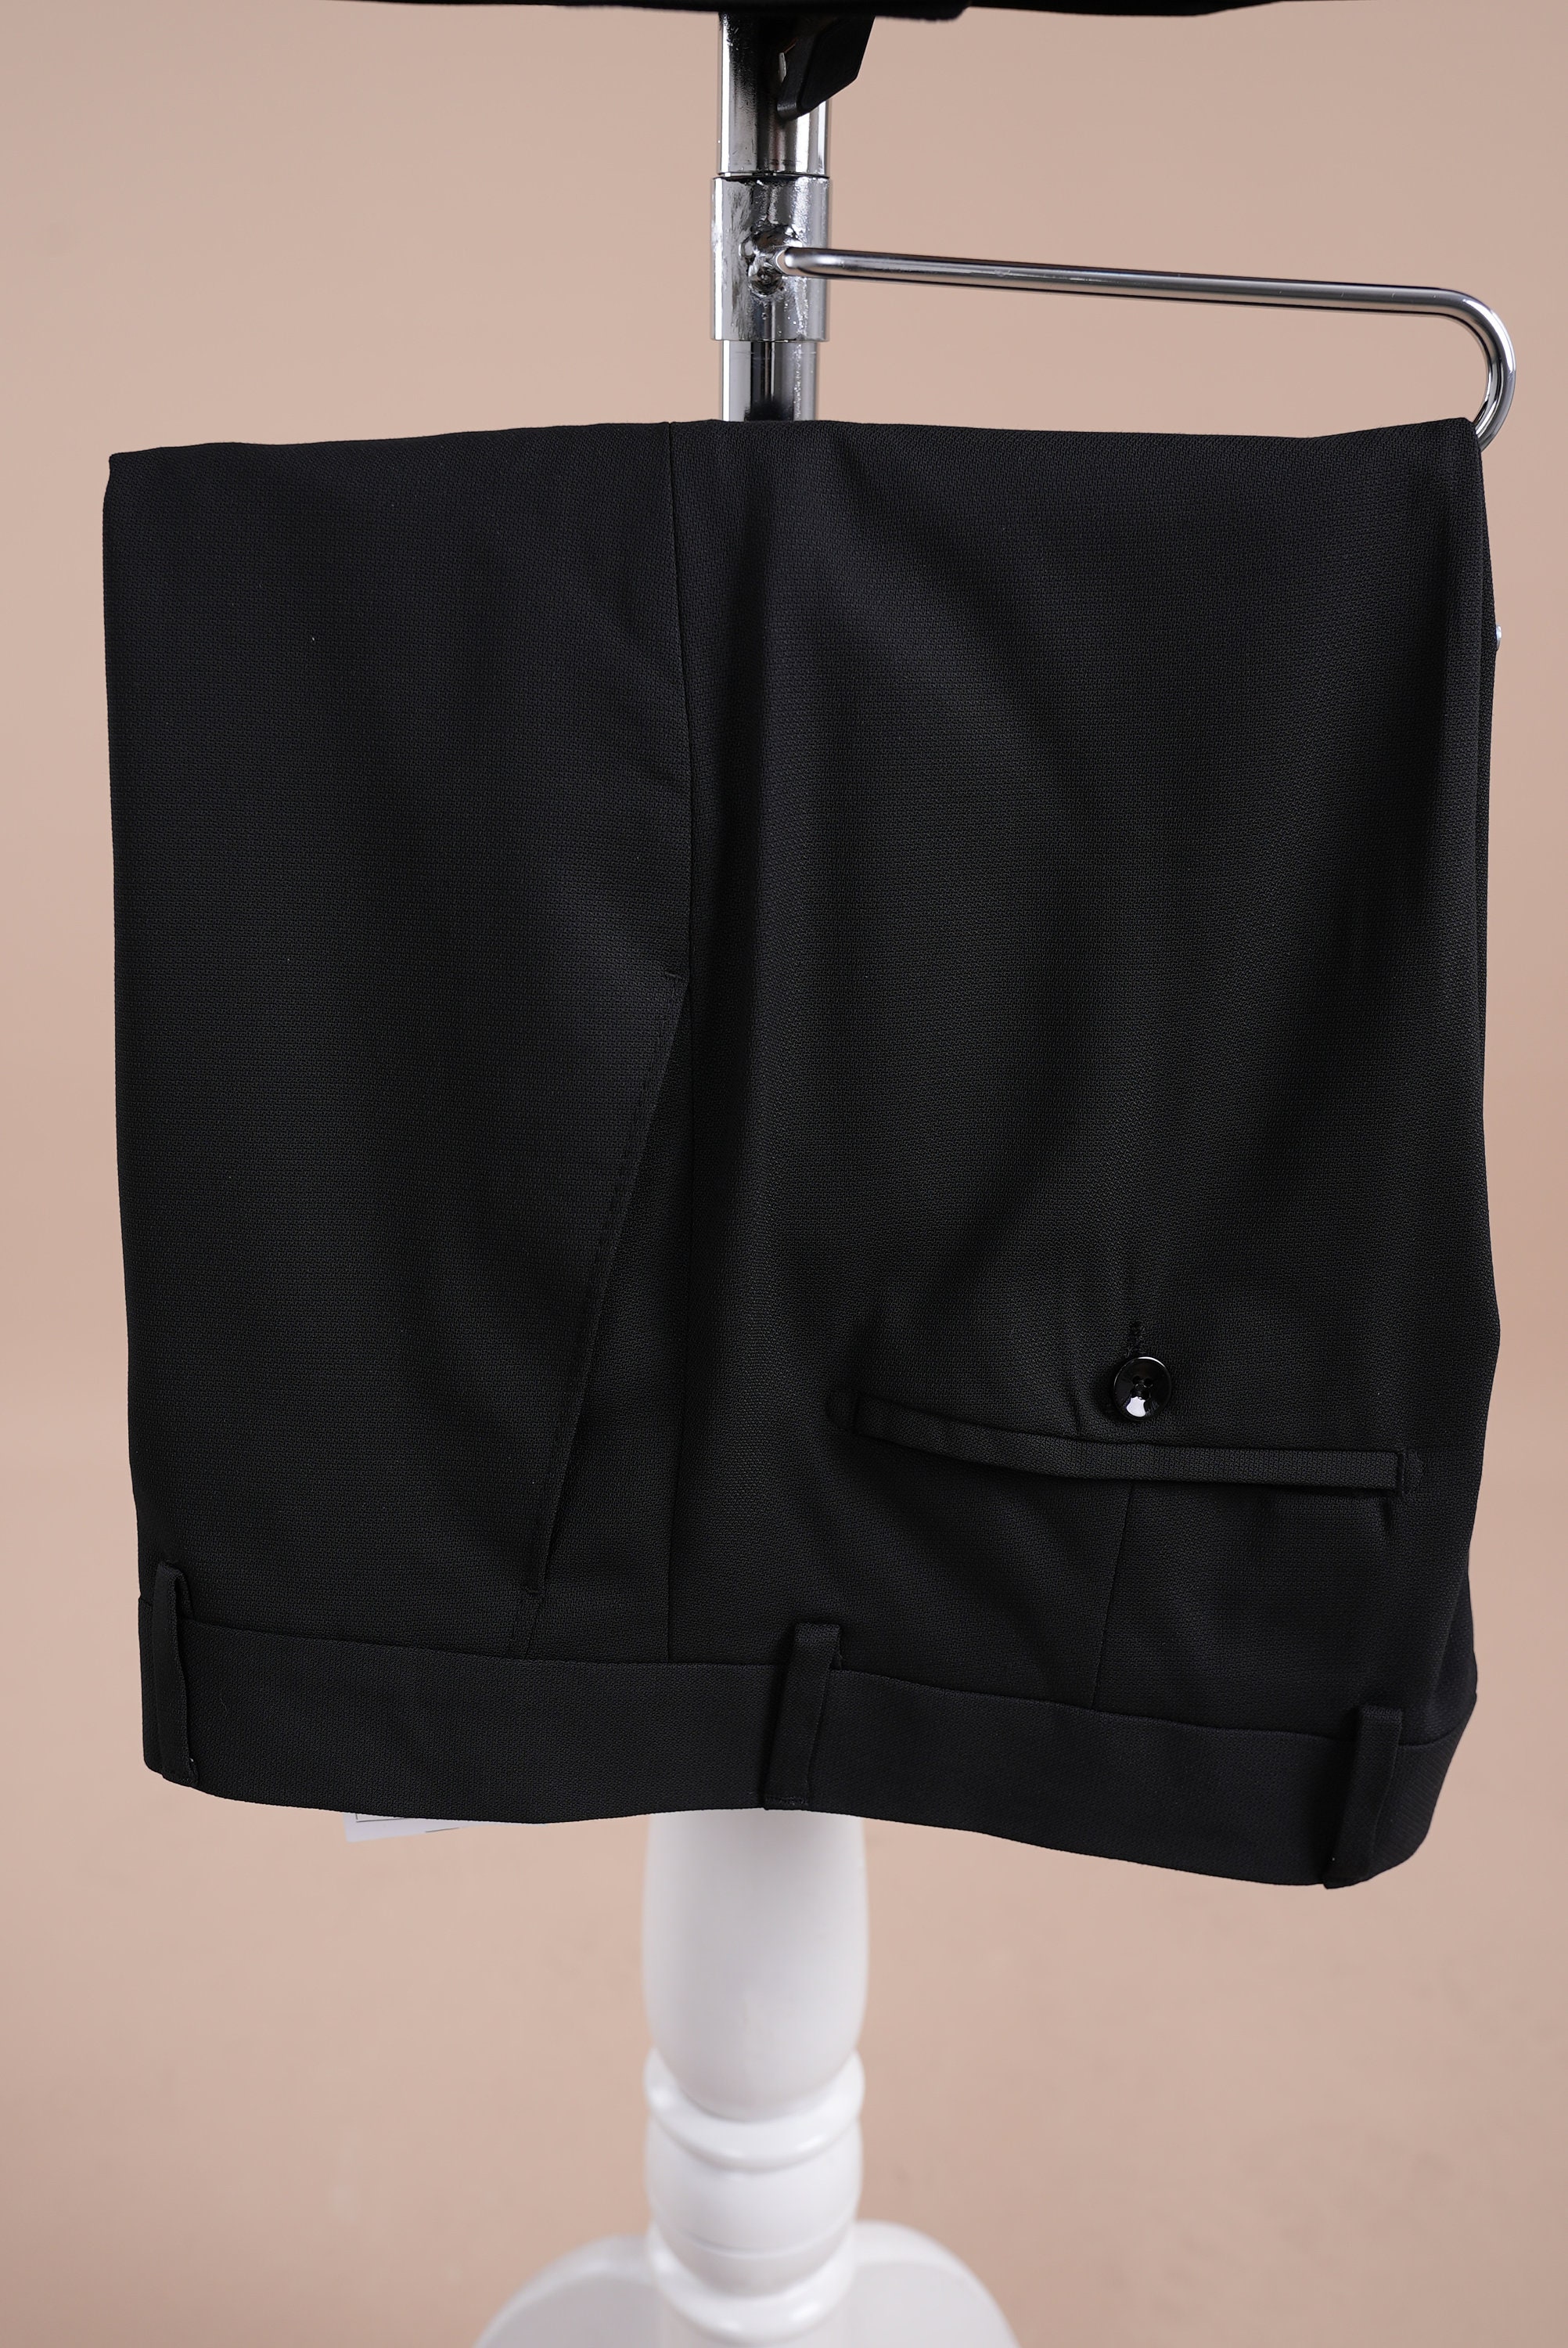 PAREZ Premium Mens Buckle Double Breasted Suit Slim Fit - Etsy